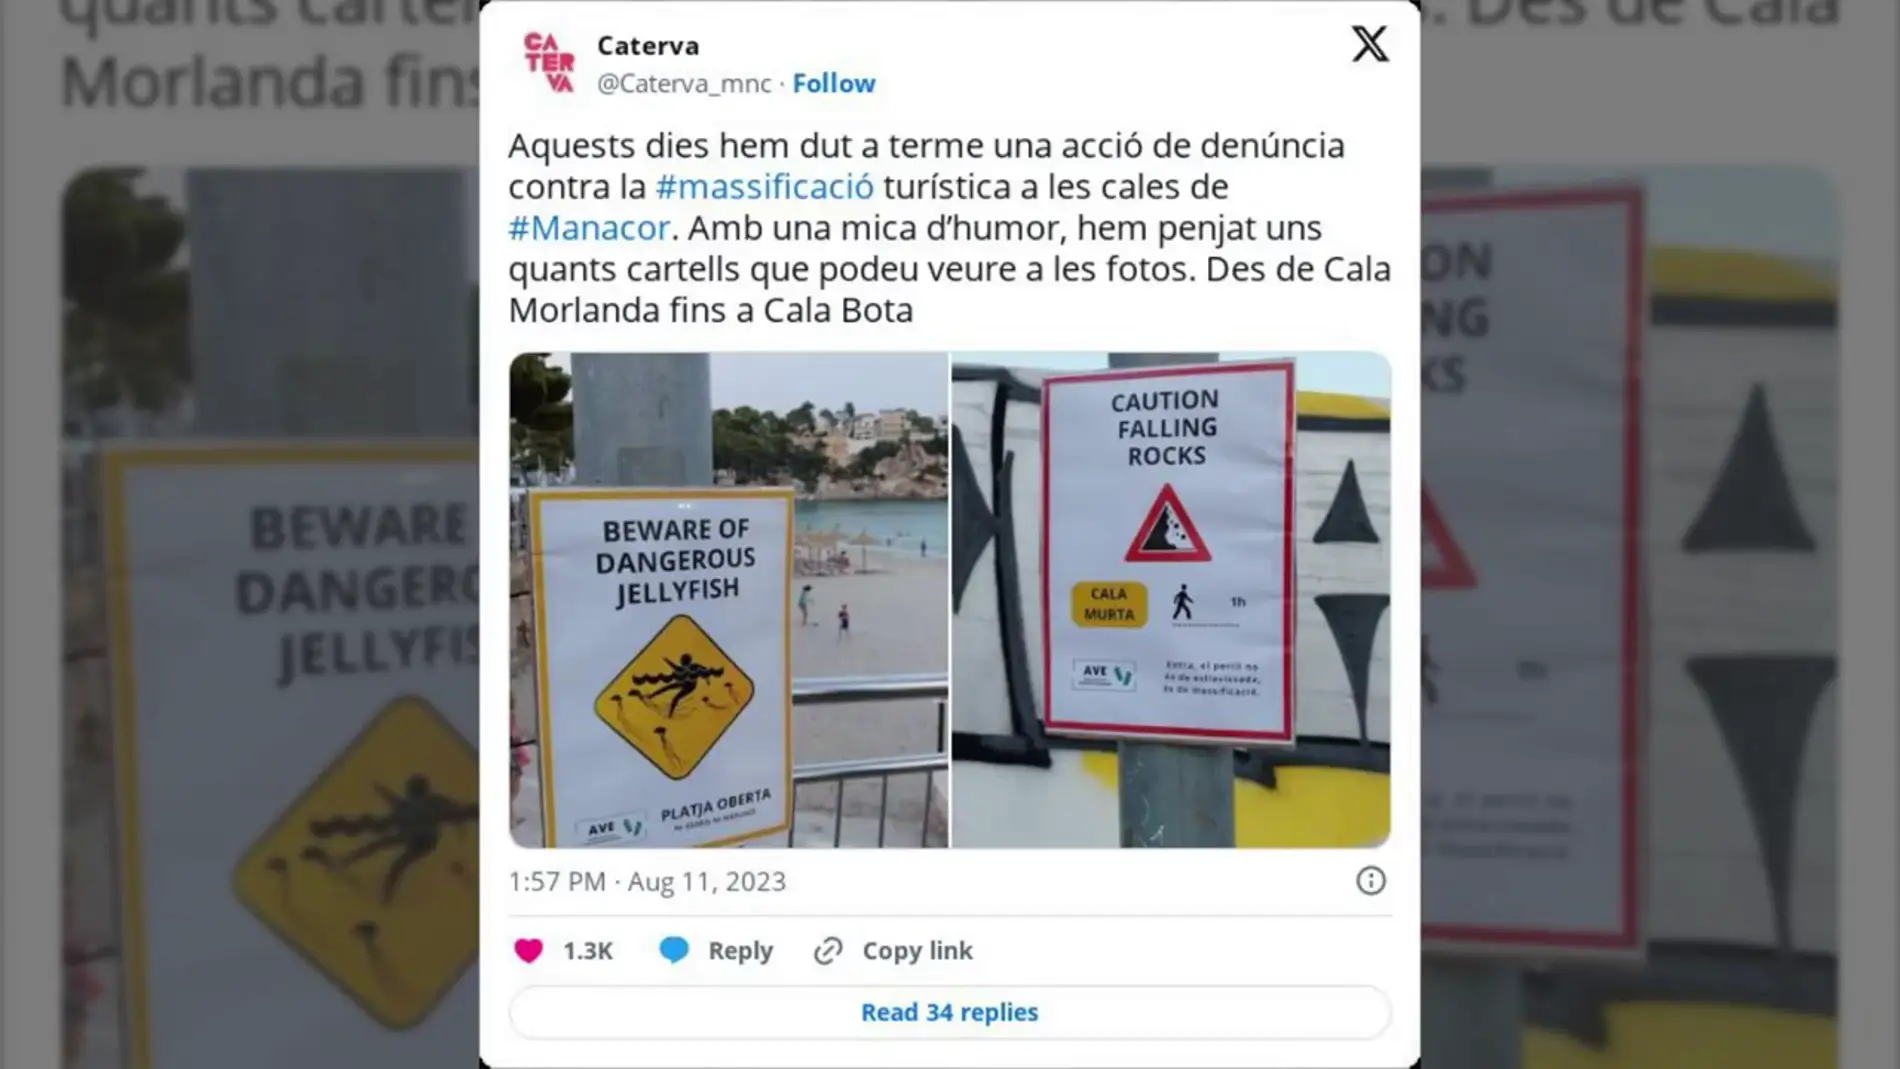 Las playas de Mallorca se llenan de 'carteles falsos' para engañar a los turistas y evitar la masificación